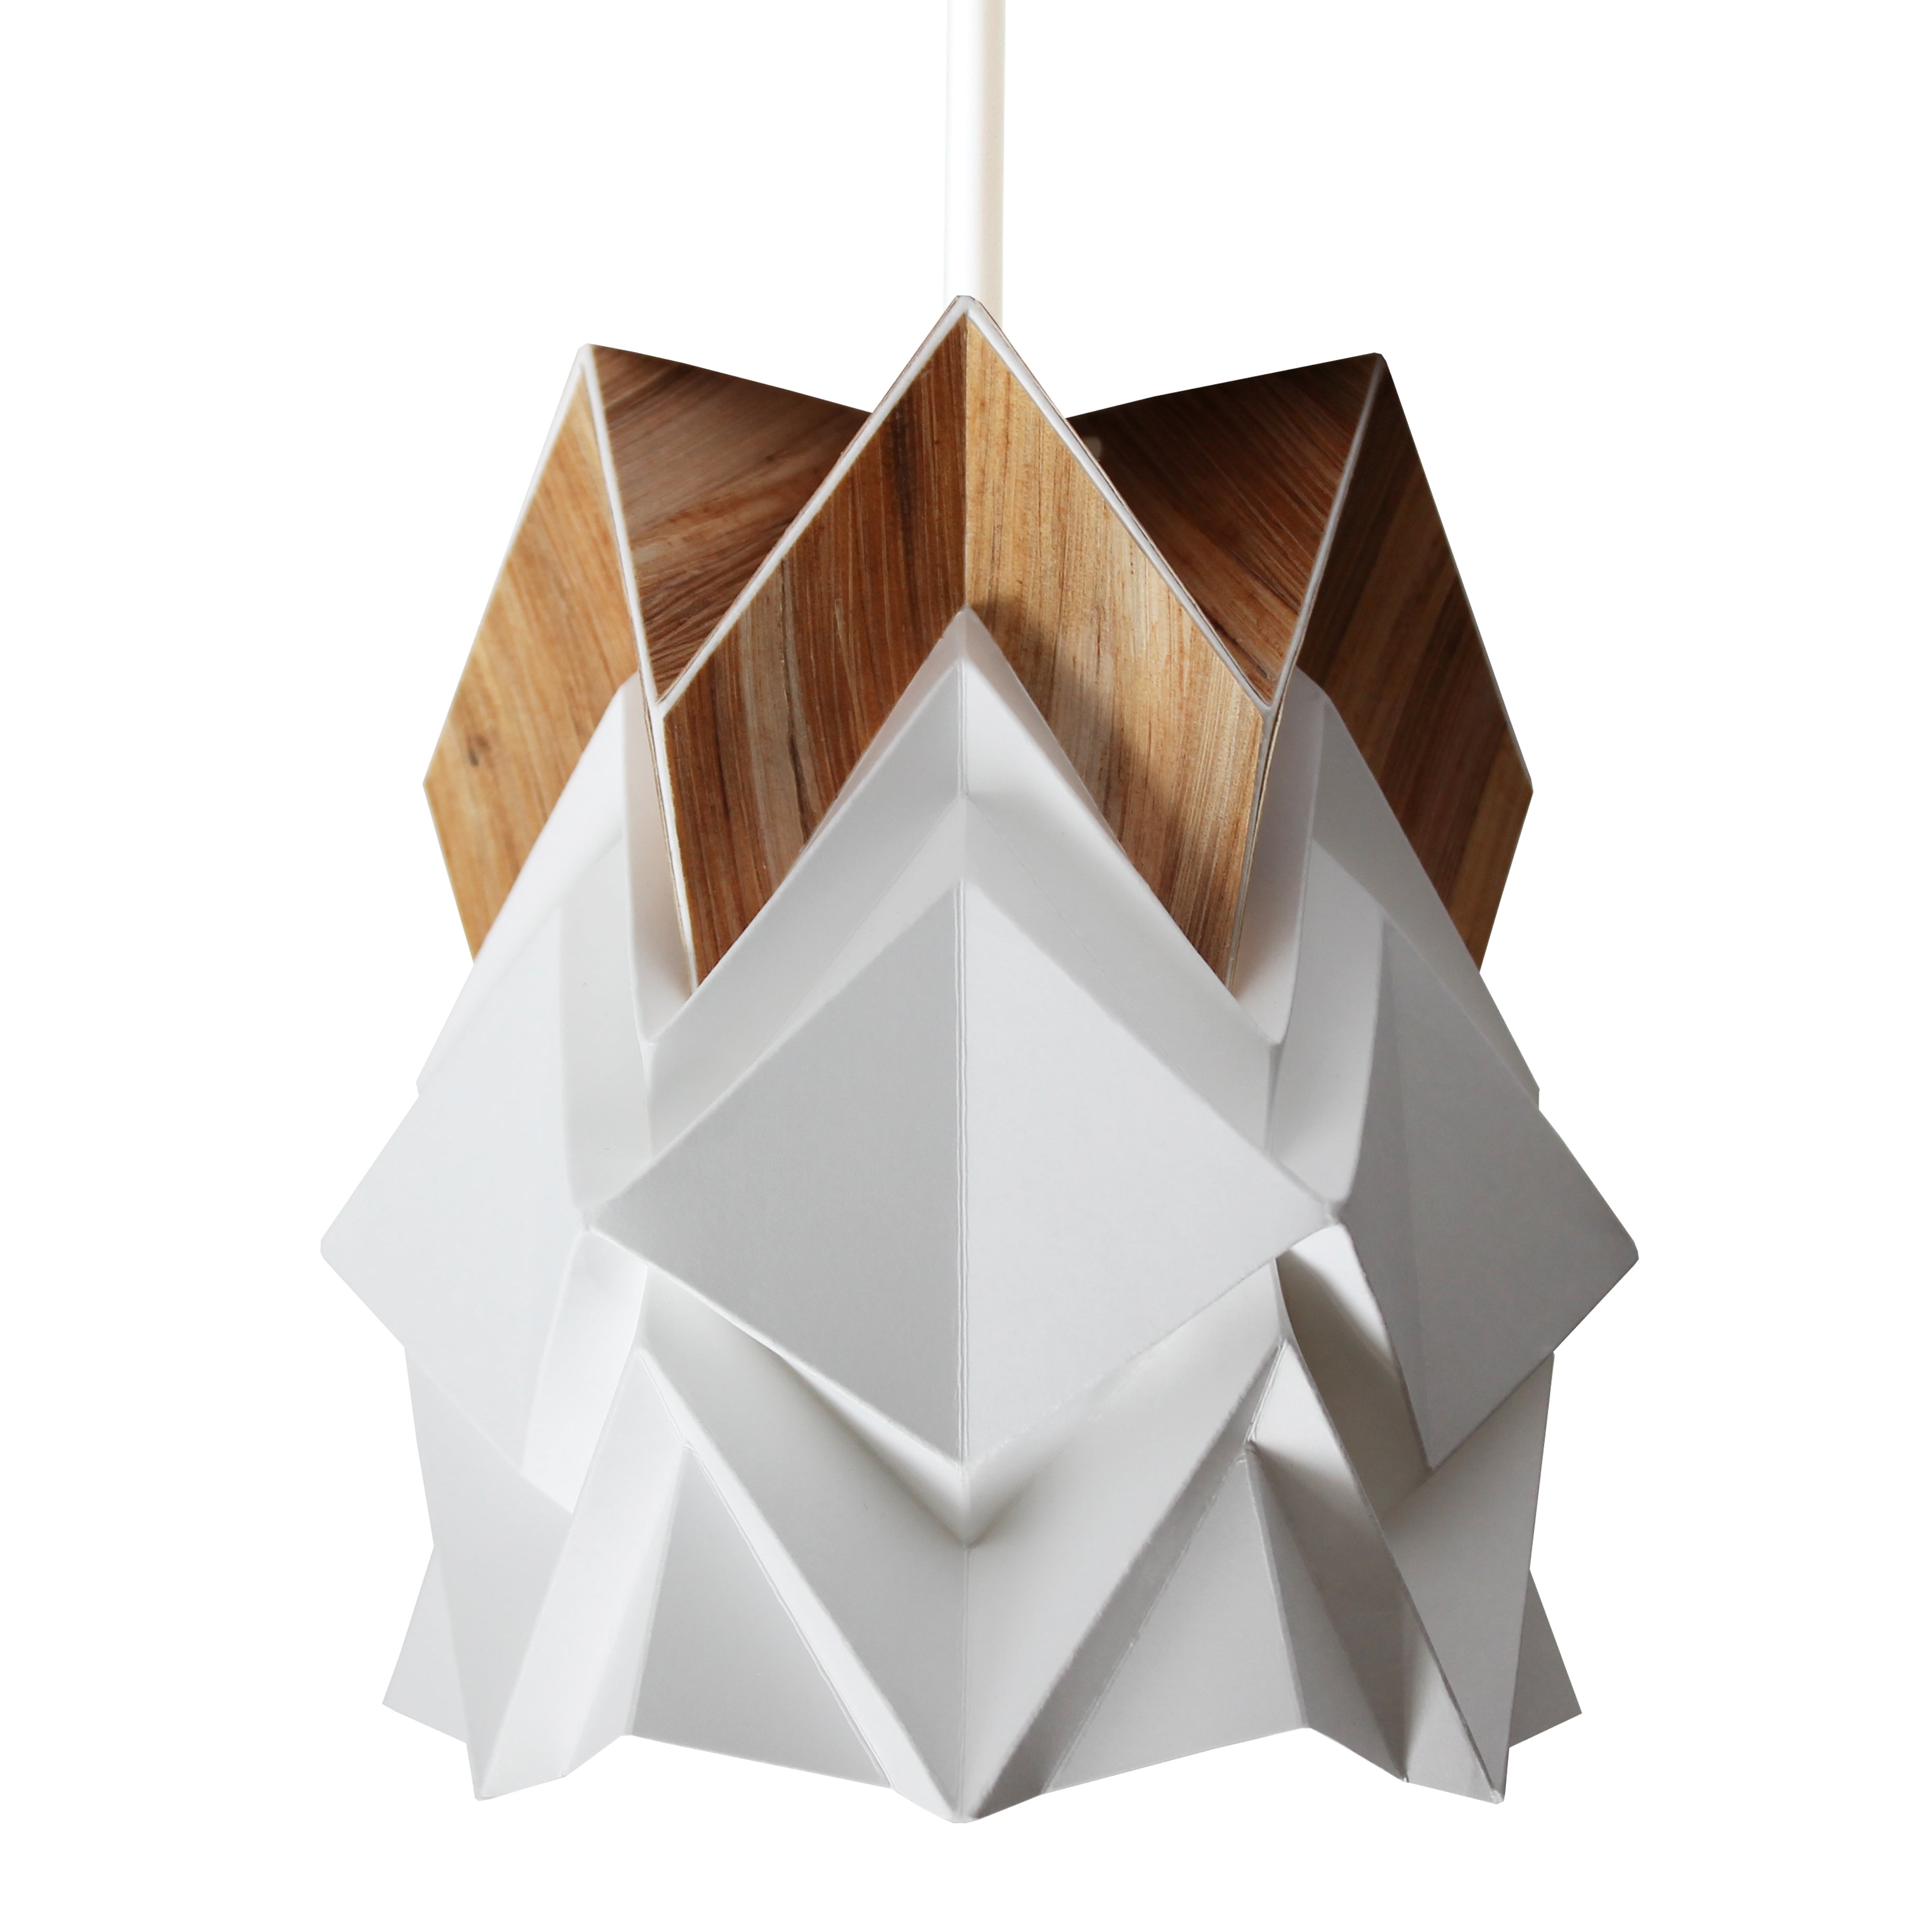 Petite suspension origami ecowood